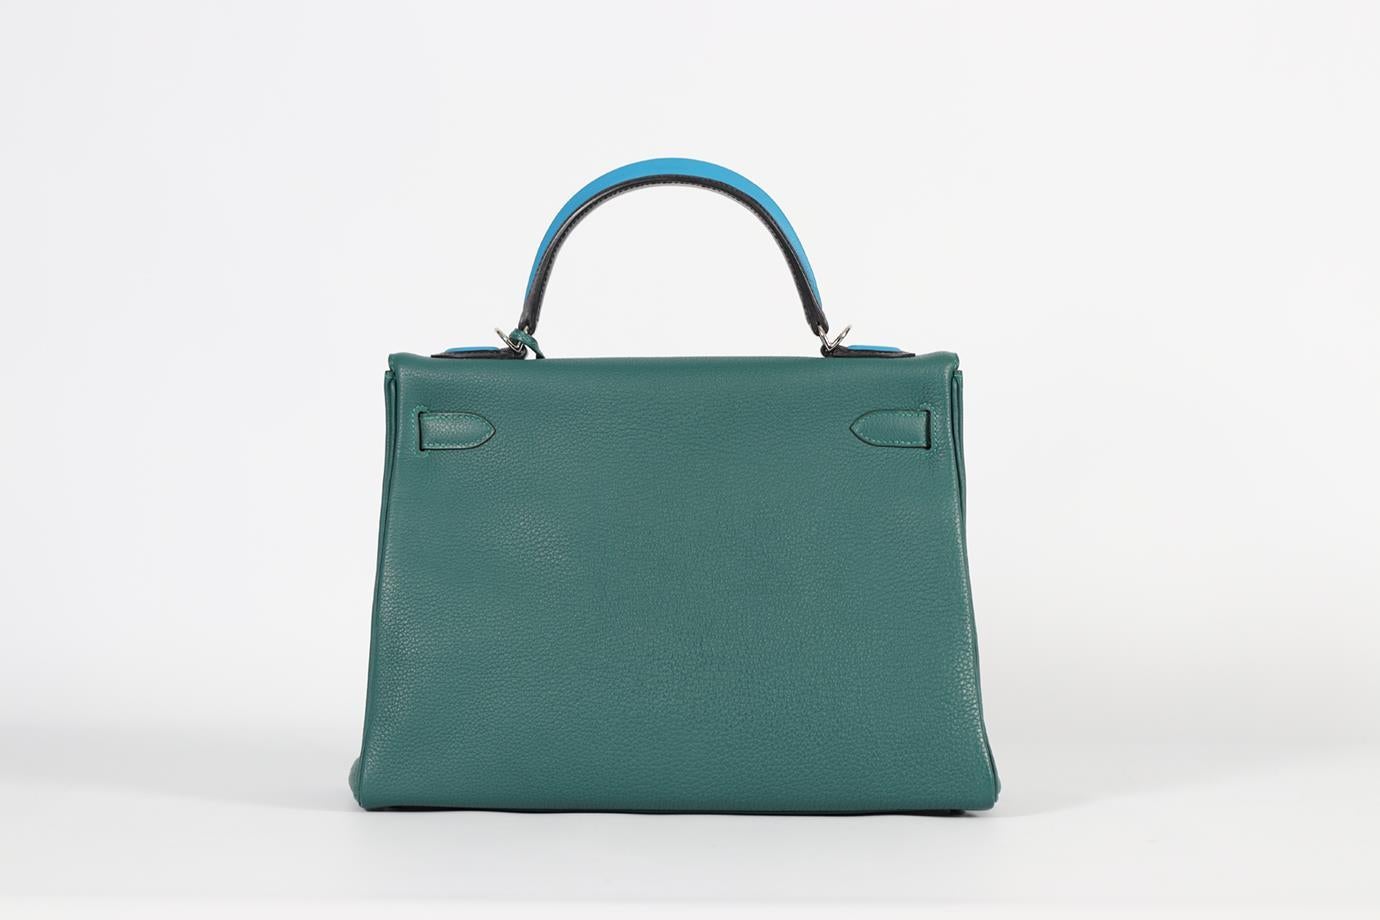 Hermès 2017 Kelly Au Pas 32cm Togo Leather Bag For Sale 1